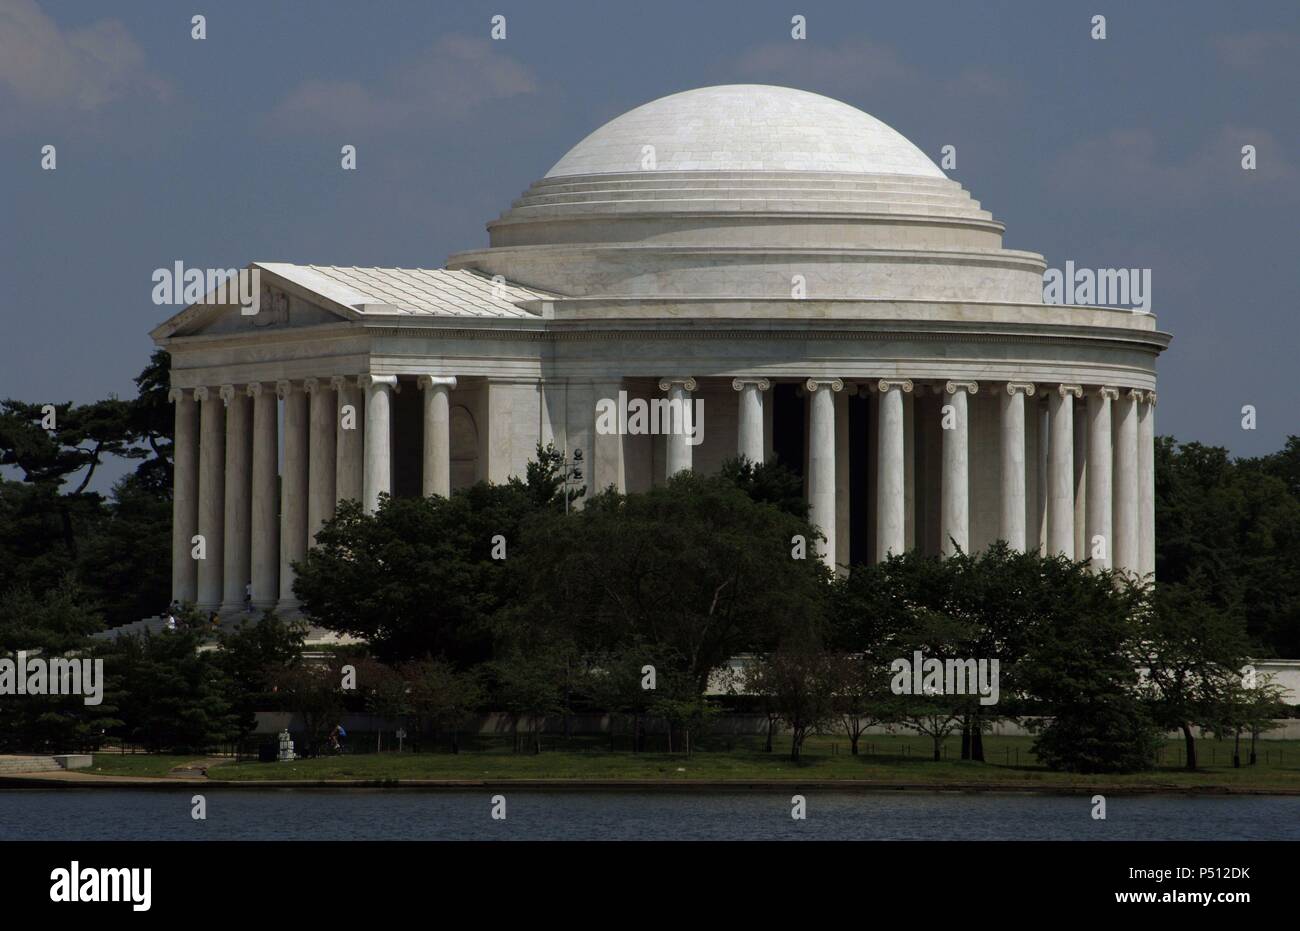 In den Vereinigten Staaten. Washington D.C. Thomas Jefferson Memorial. 3 Präsident und einer der Gründerväter der Vereinigten Staaten (1743-1826). Hauptverfasser der Erklärung der Unabhängigkeit (1776). Stockfoto